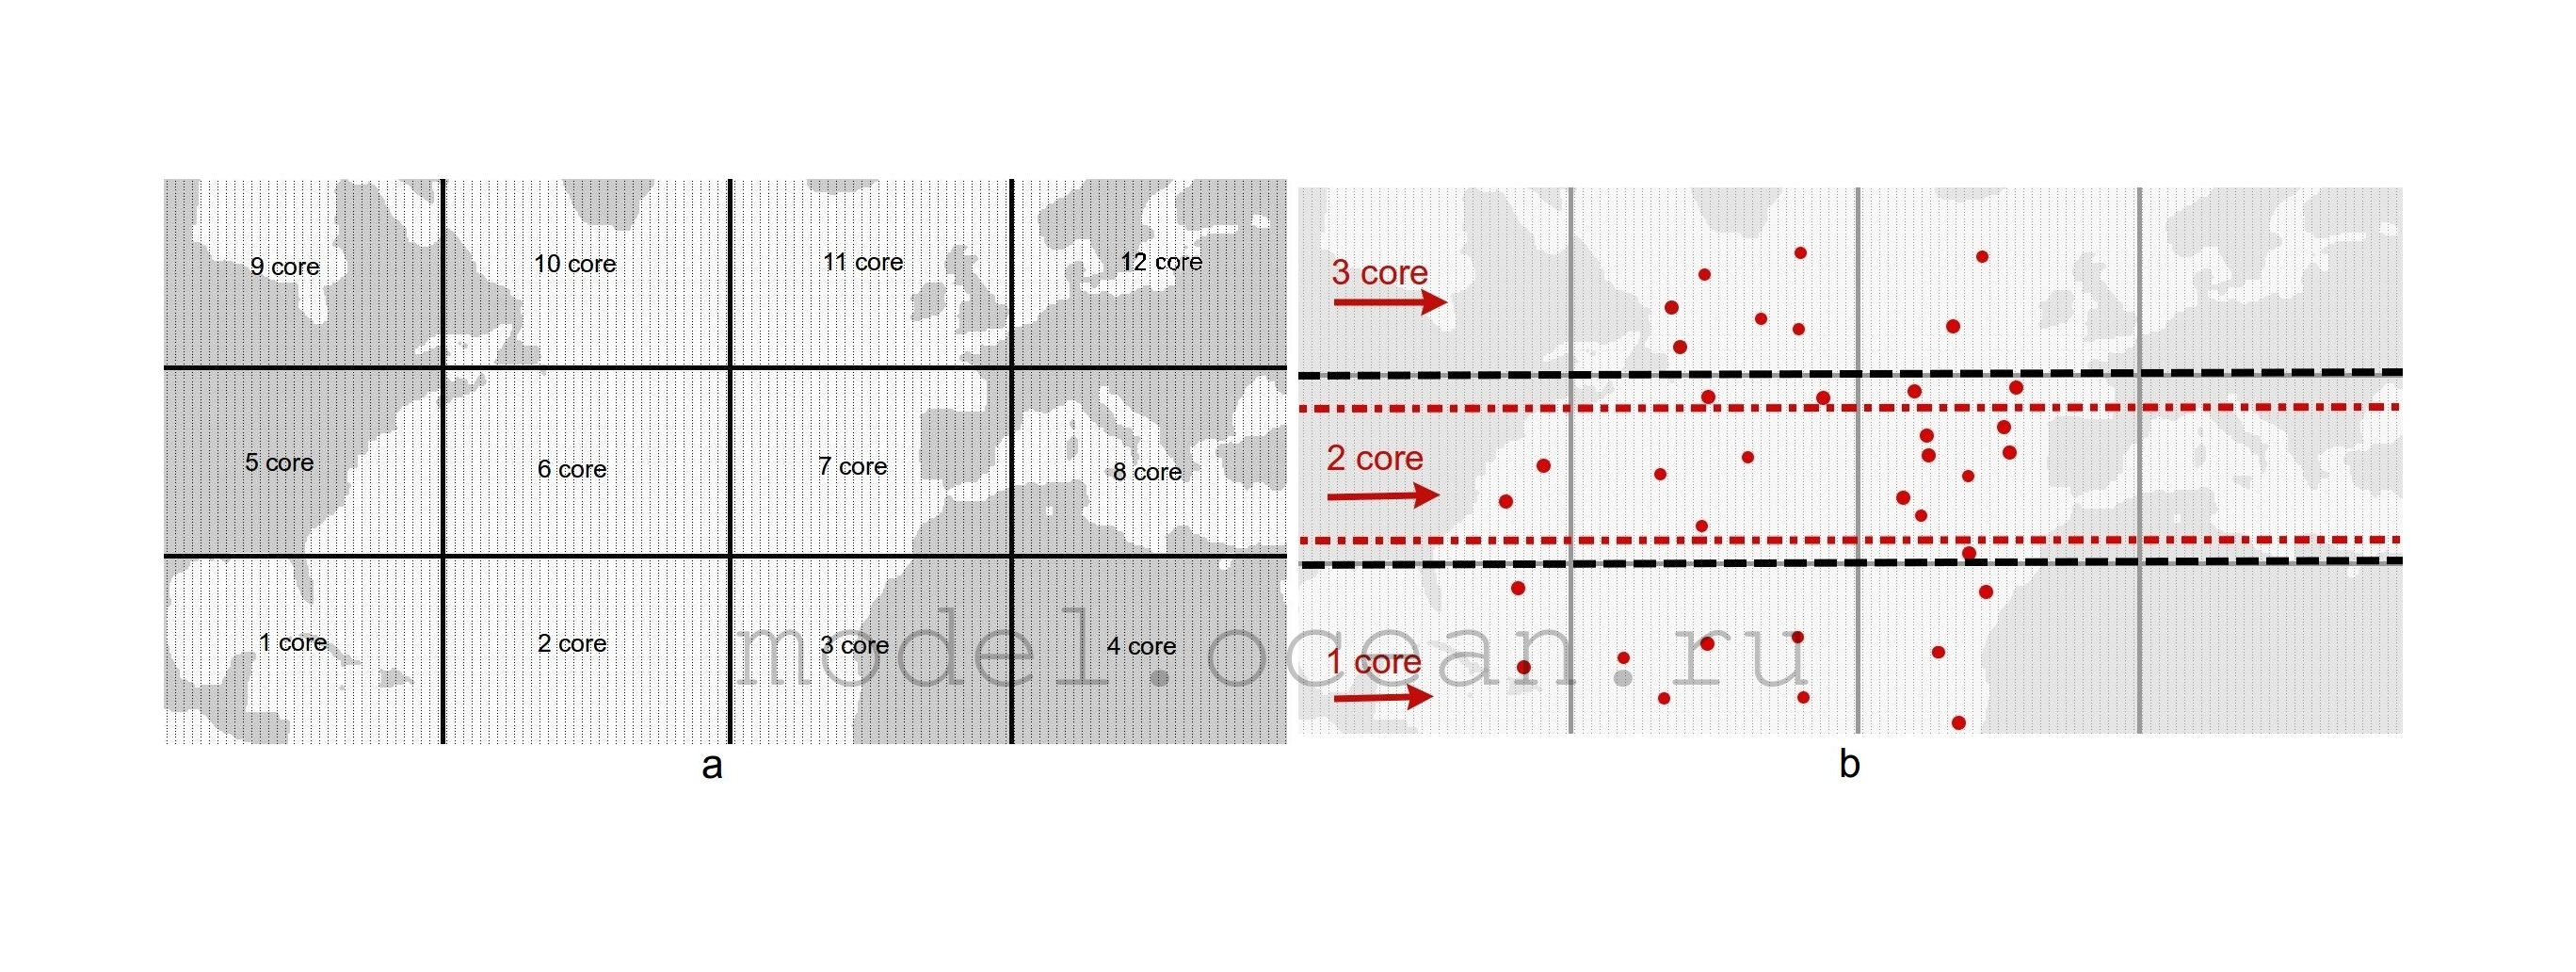 Рис. 3. (a) Двумерная процессорная декомпозиция области, используемая в модели океана ИВМИО (показана прямоугольниками); (b) одномерная процессорная декомпозиция, используемая при усвоении данных, показана красным и черным пунктиром. Точками показаны данные наблюдений